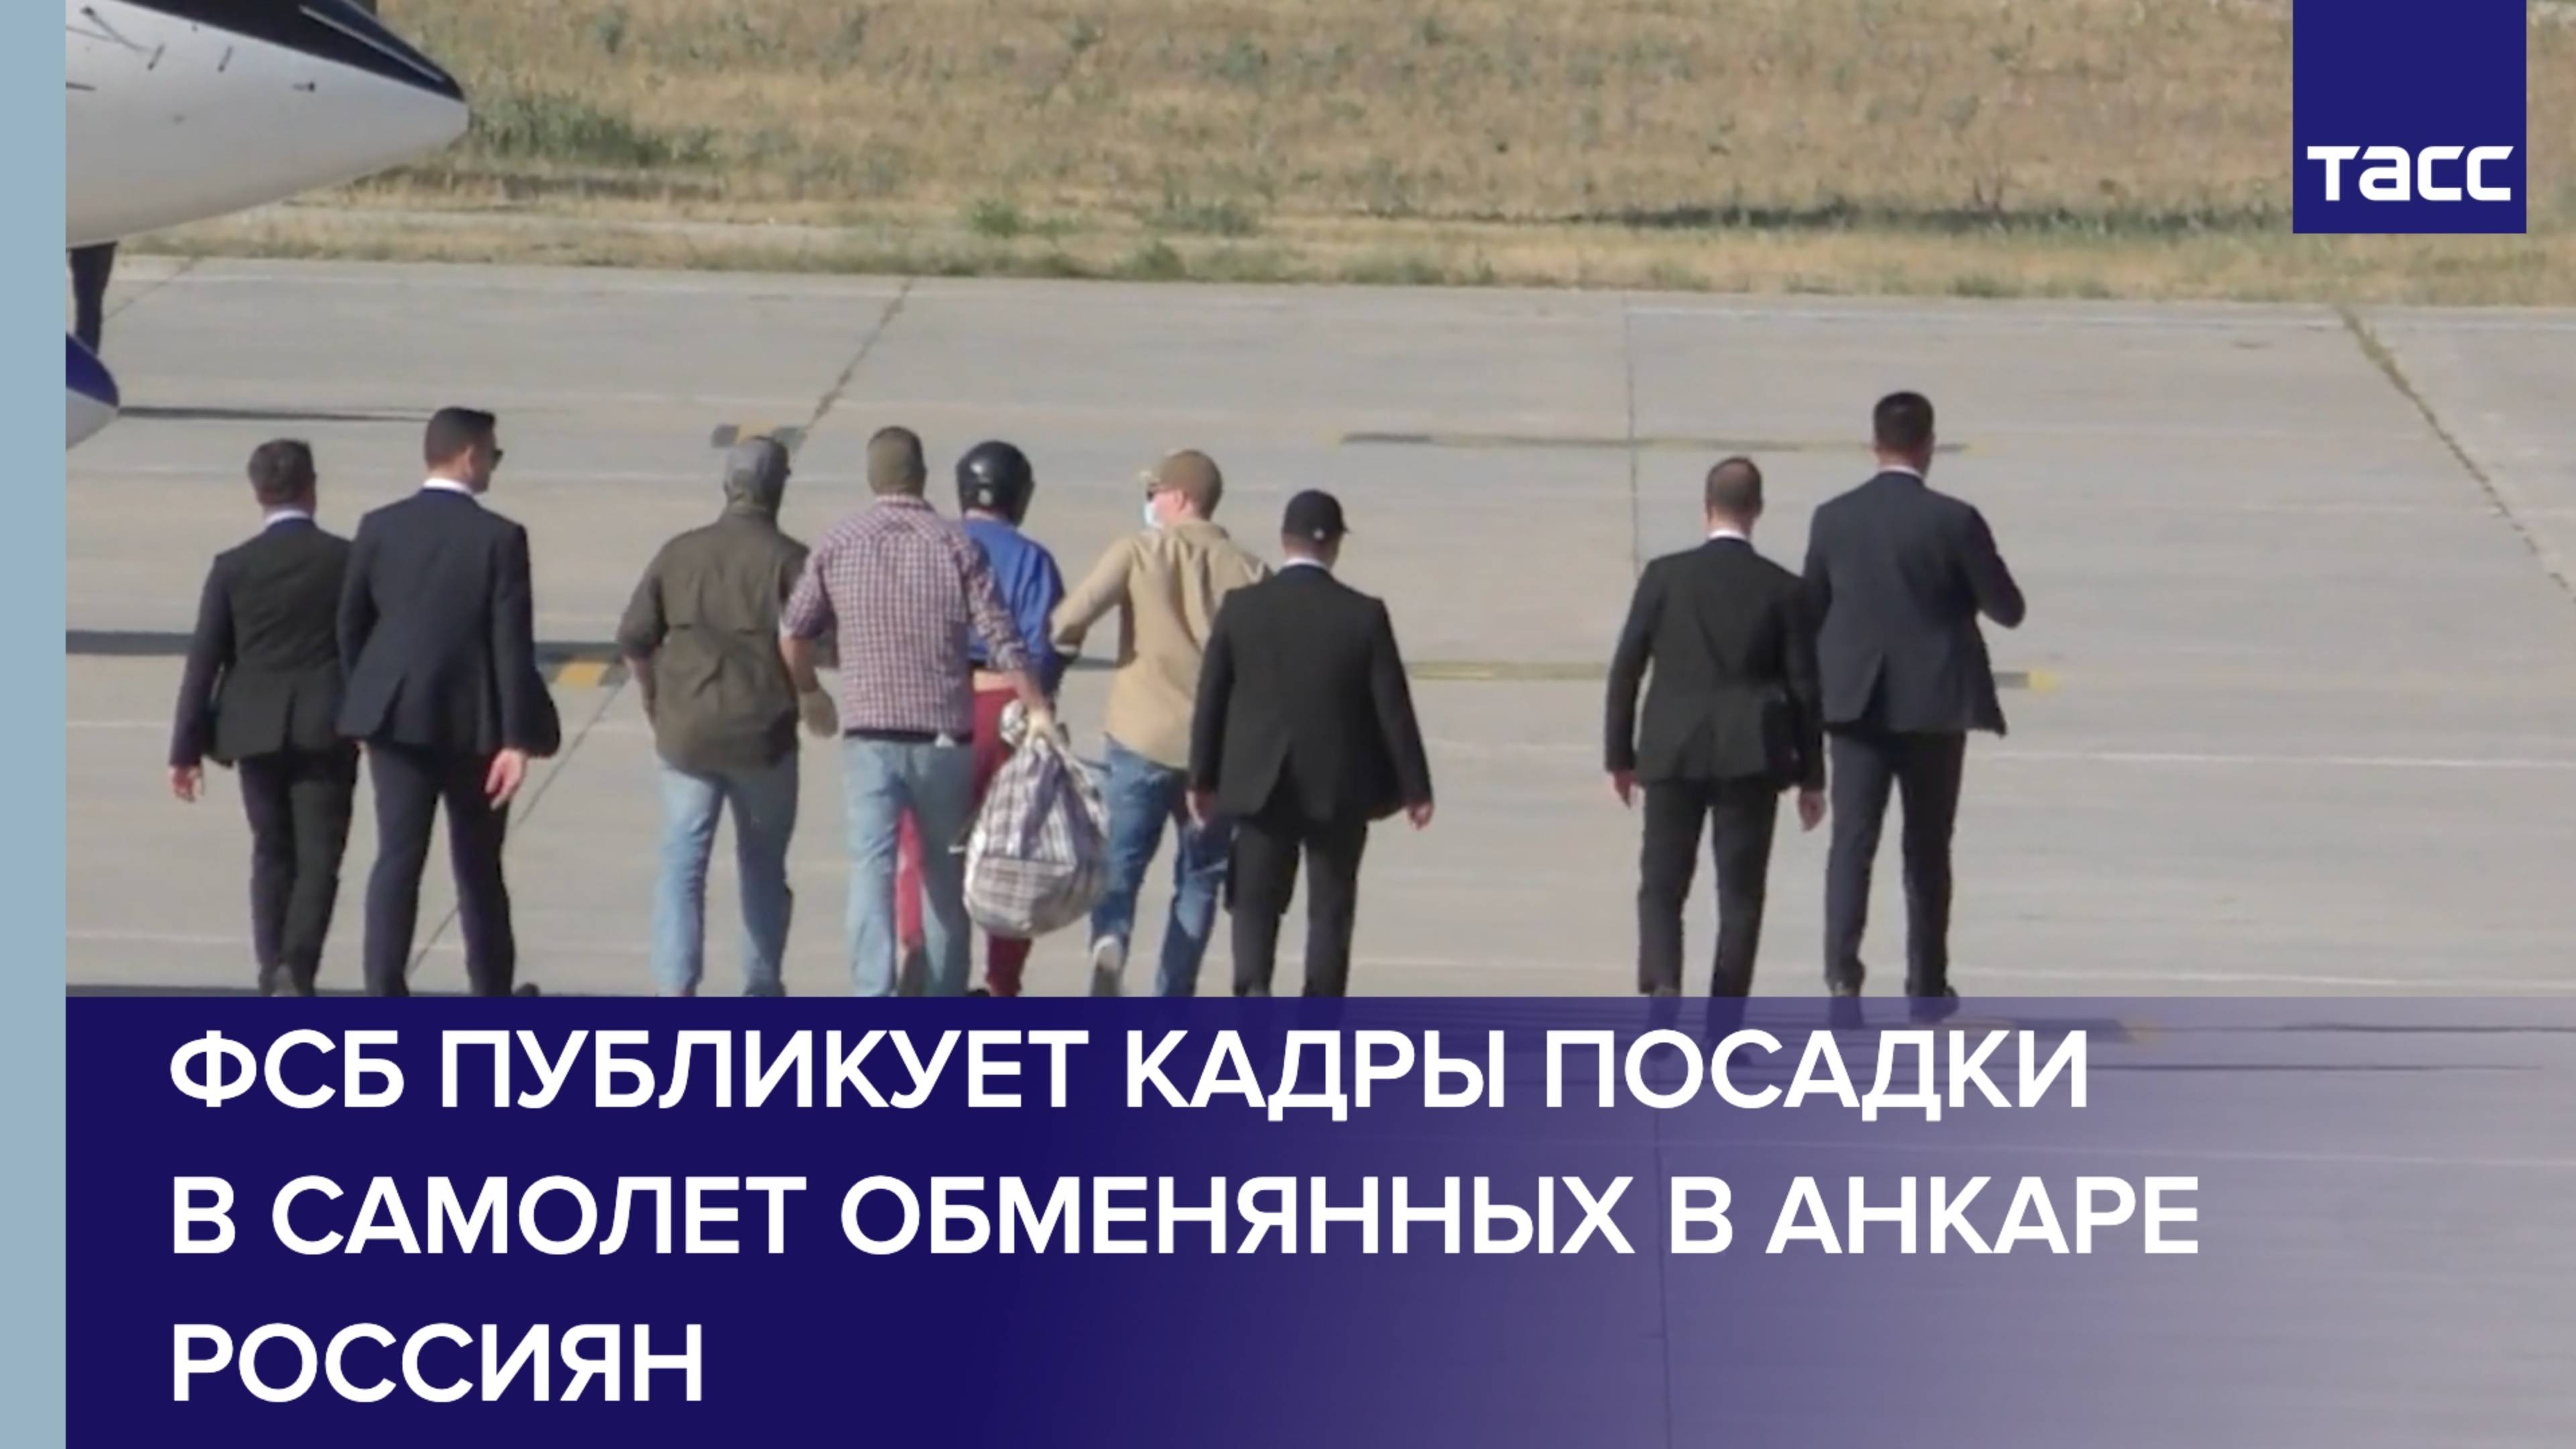 ФСБ публикует кадры посадки в самолет обменянных в Анкаре россиян